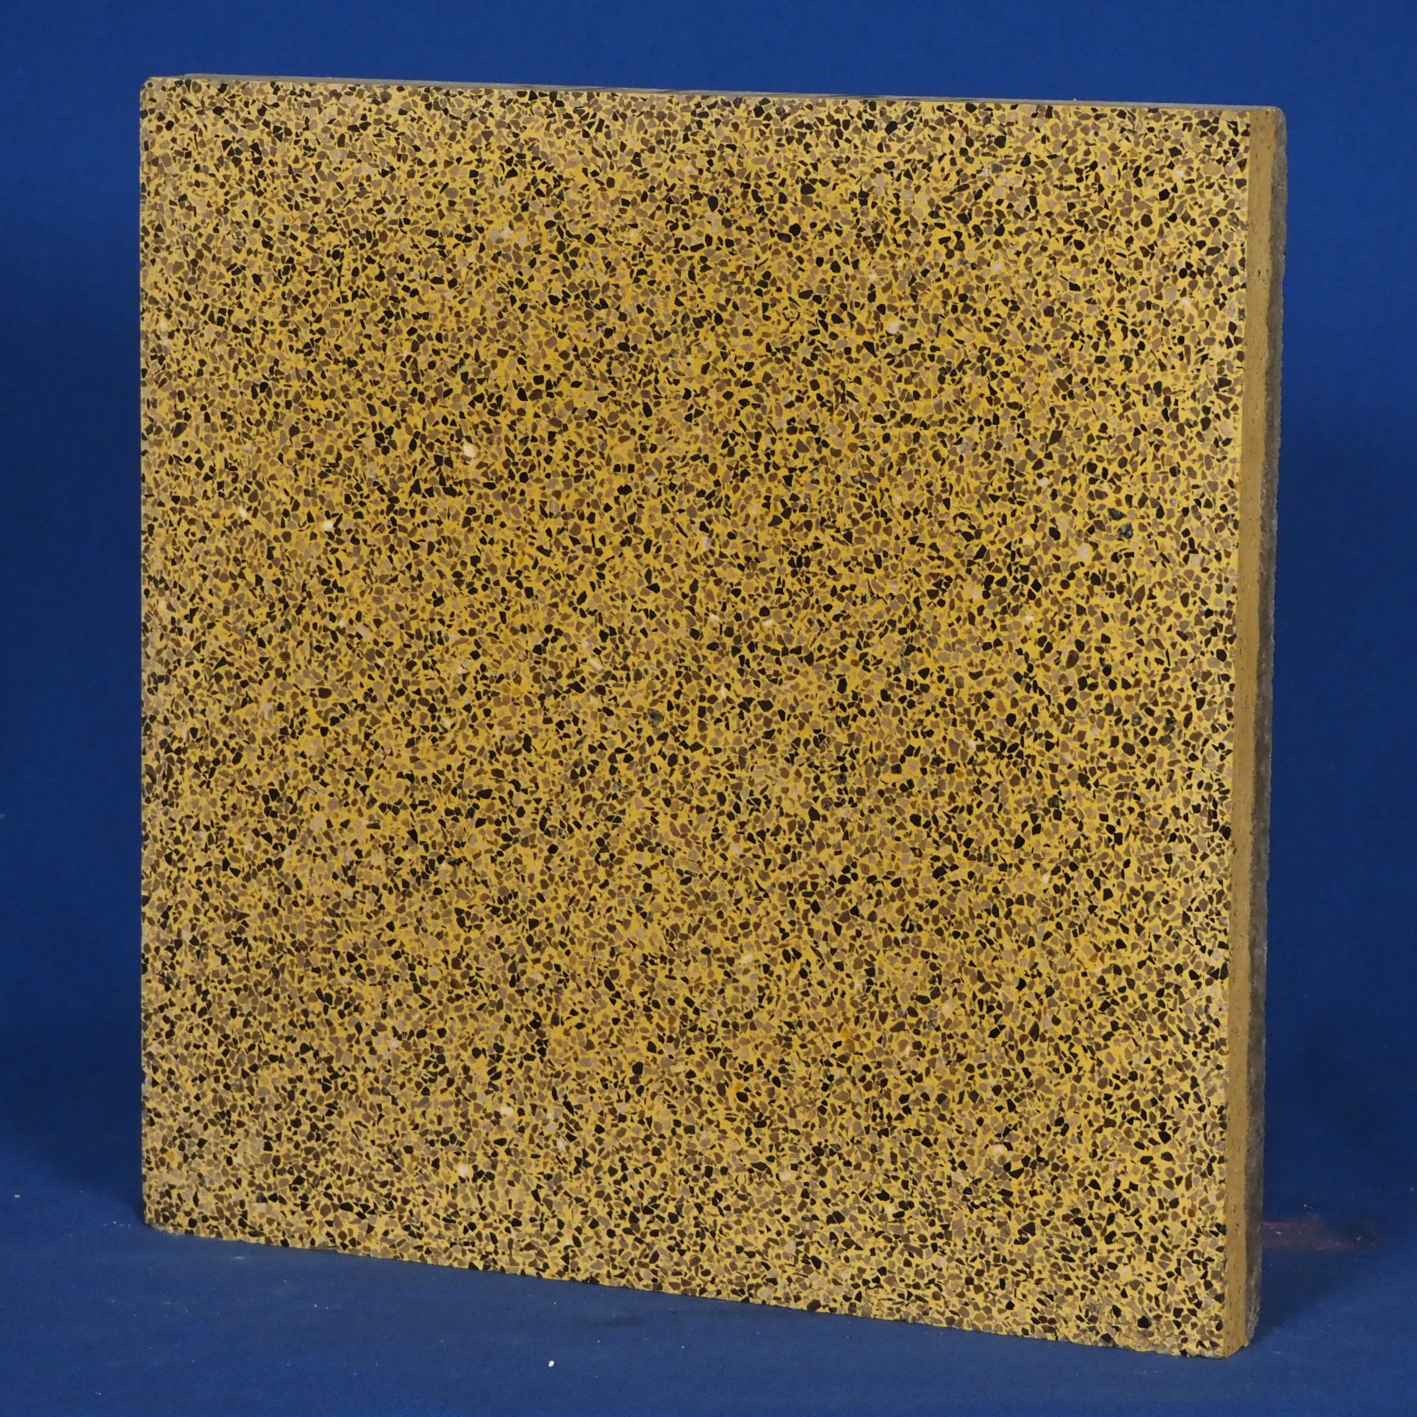 Terrazzo 'Cortemilia' floor tiles (30 x 30 cm) - Sold per pallet